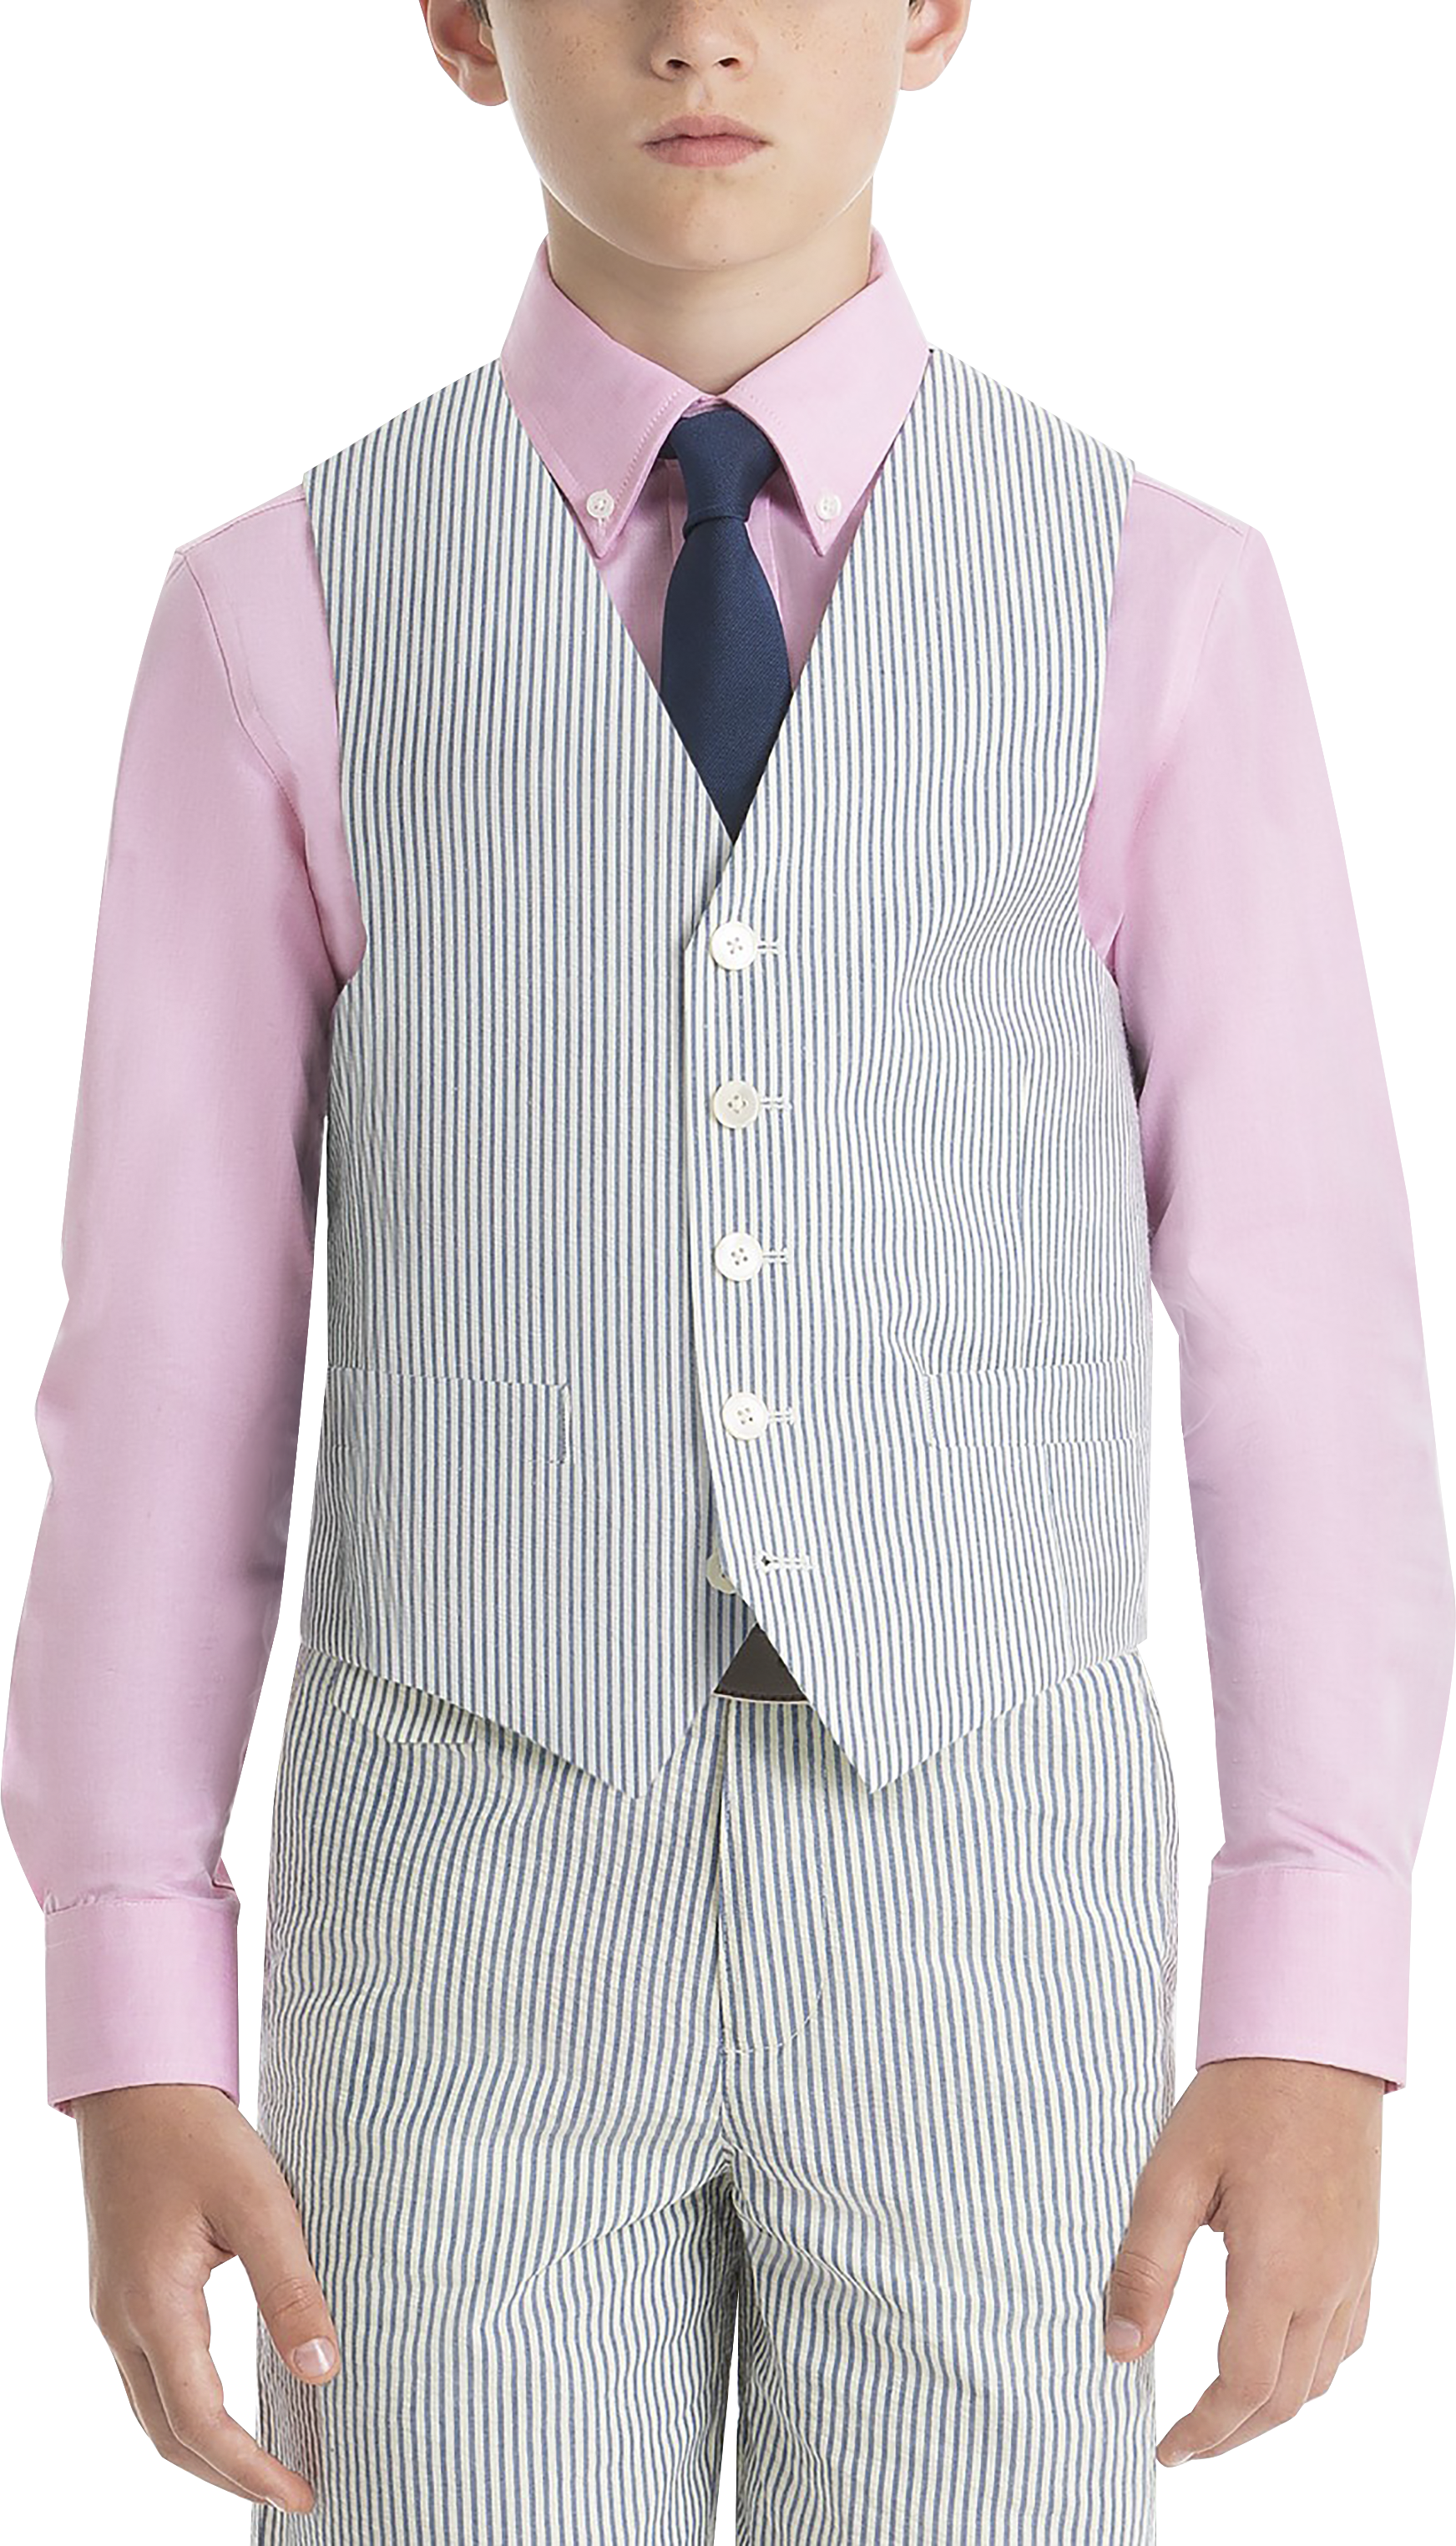 Mens Boys Suits & Tuxedos, Suits - Lauren By Ralph Lauren Boys (Sizes 4-7) Suit Separates Vest, Blue & White Seersucker - Men's Wearhouse